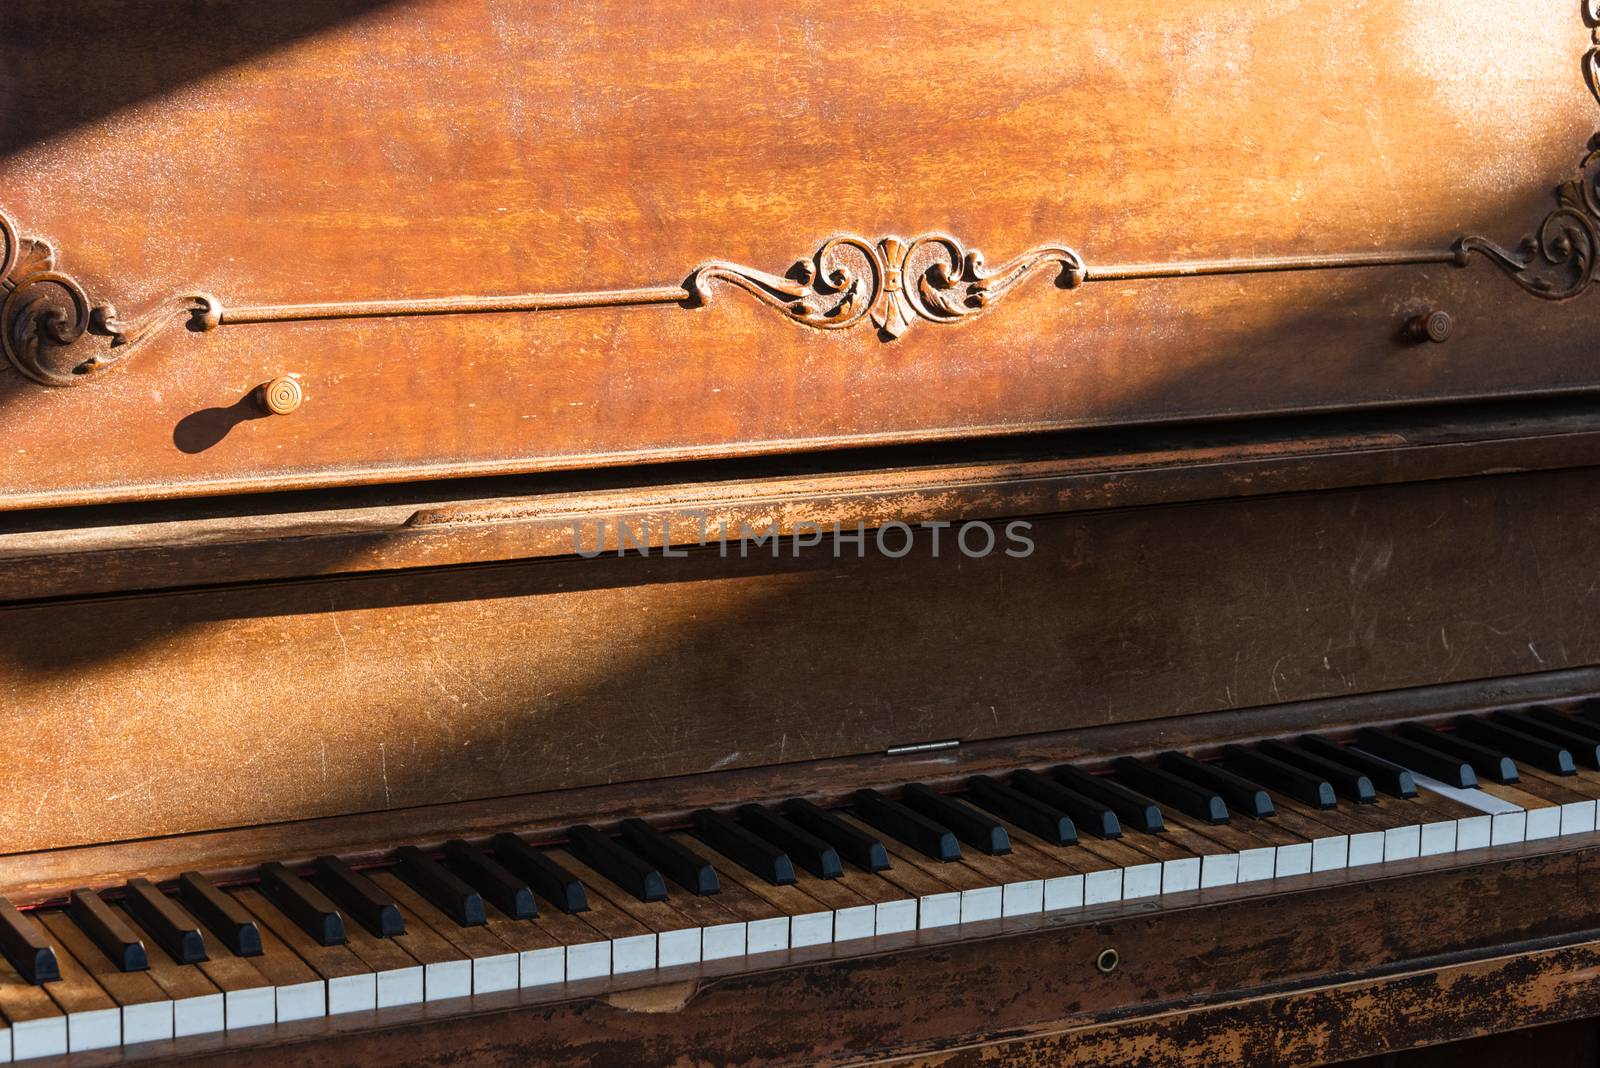 Open keyboard of street piano in sunlight ray. by Imagenet